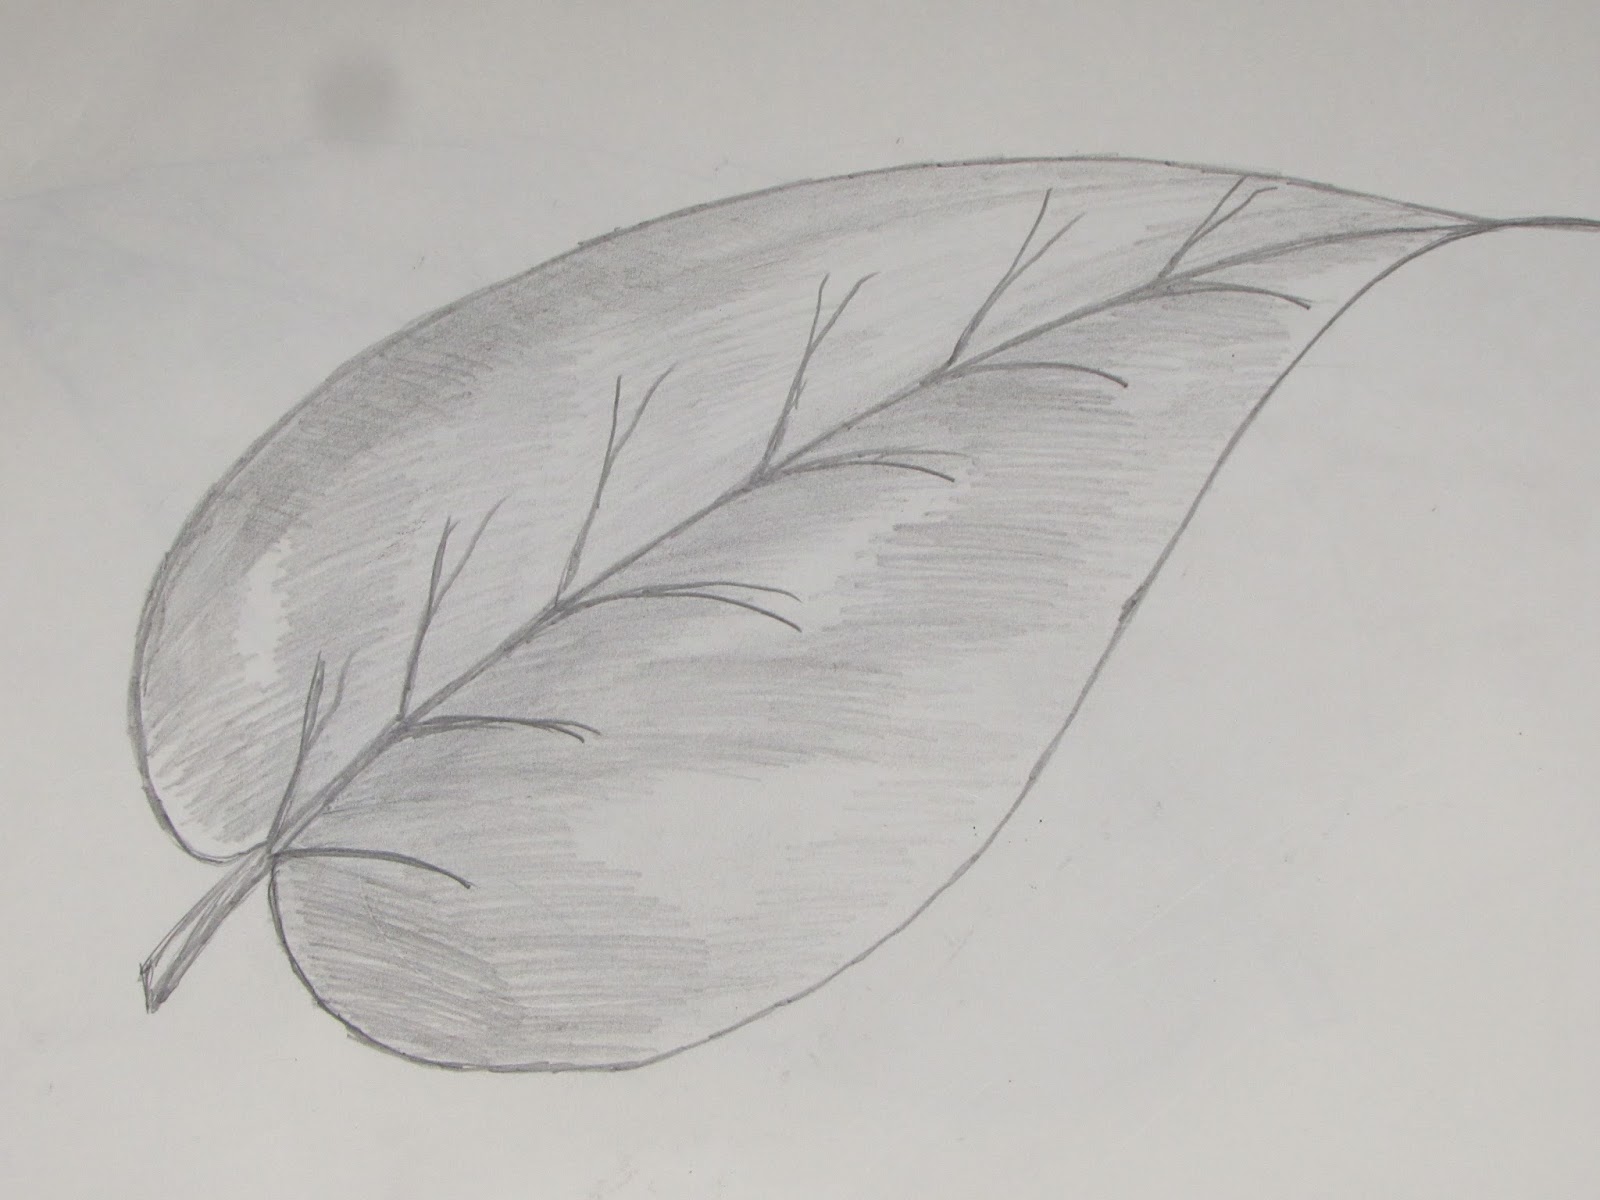 Leaf Drawing Amazing Sketch